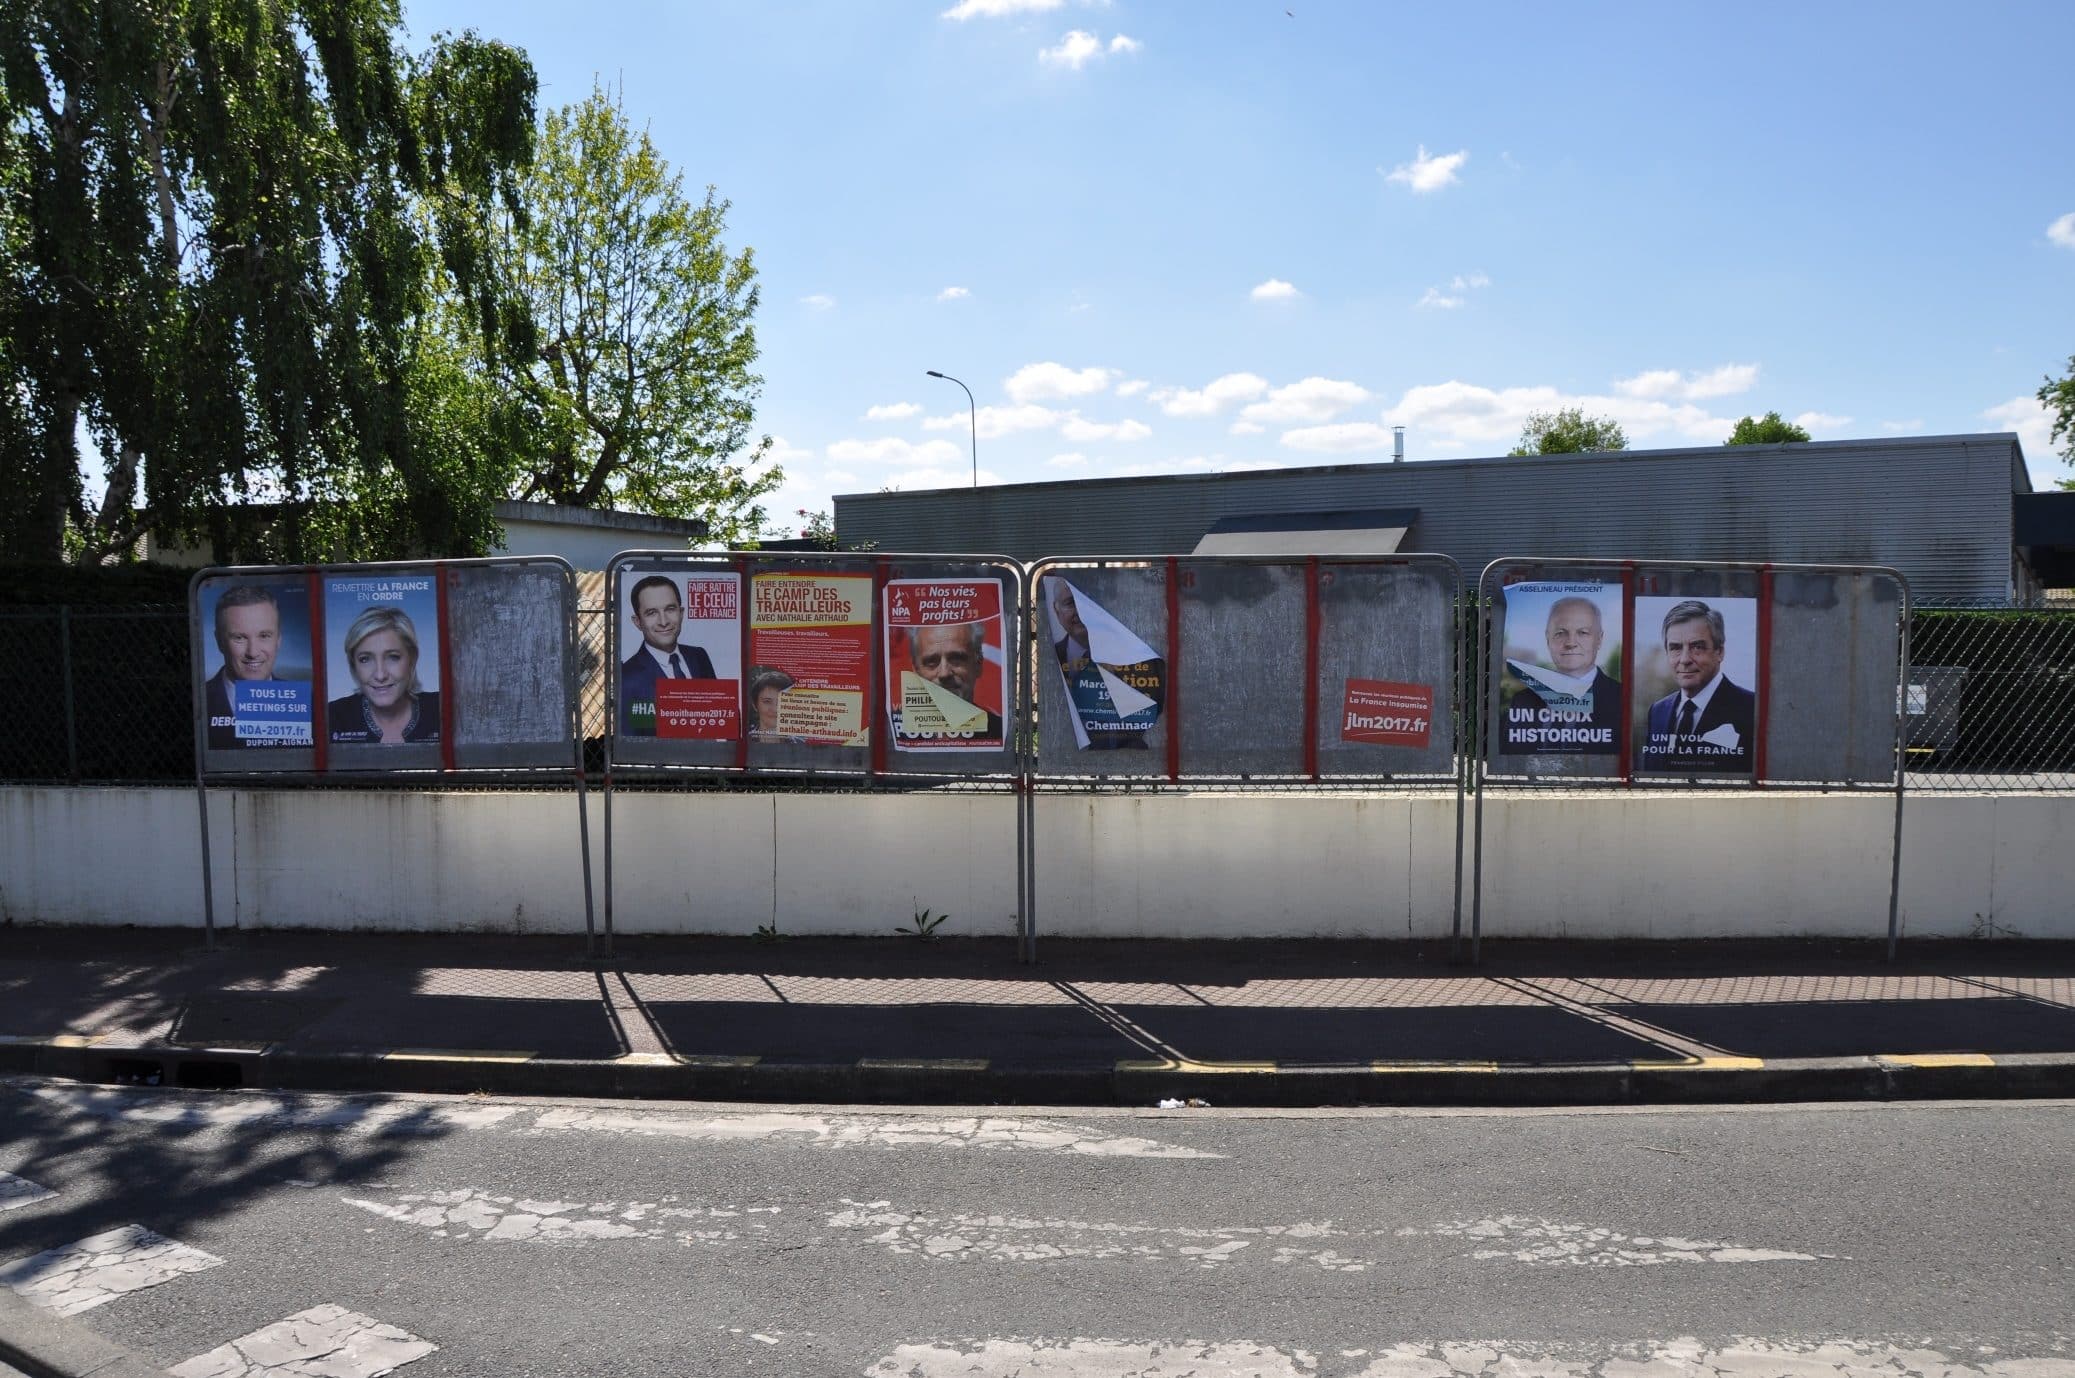 A Villenave-d’Ornon, services publics et usagers cherchent candidat